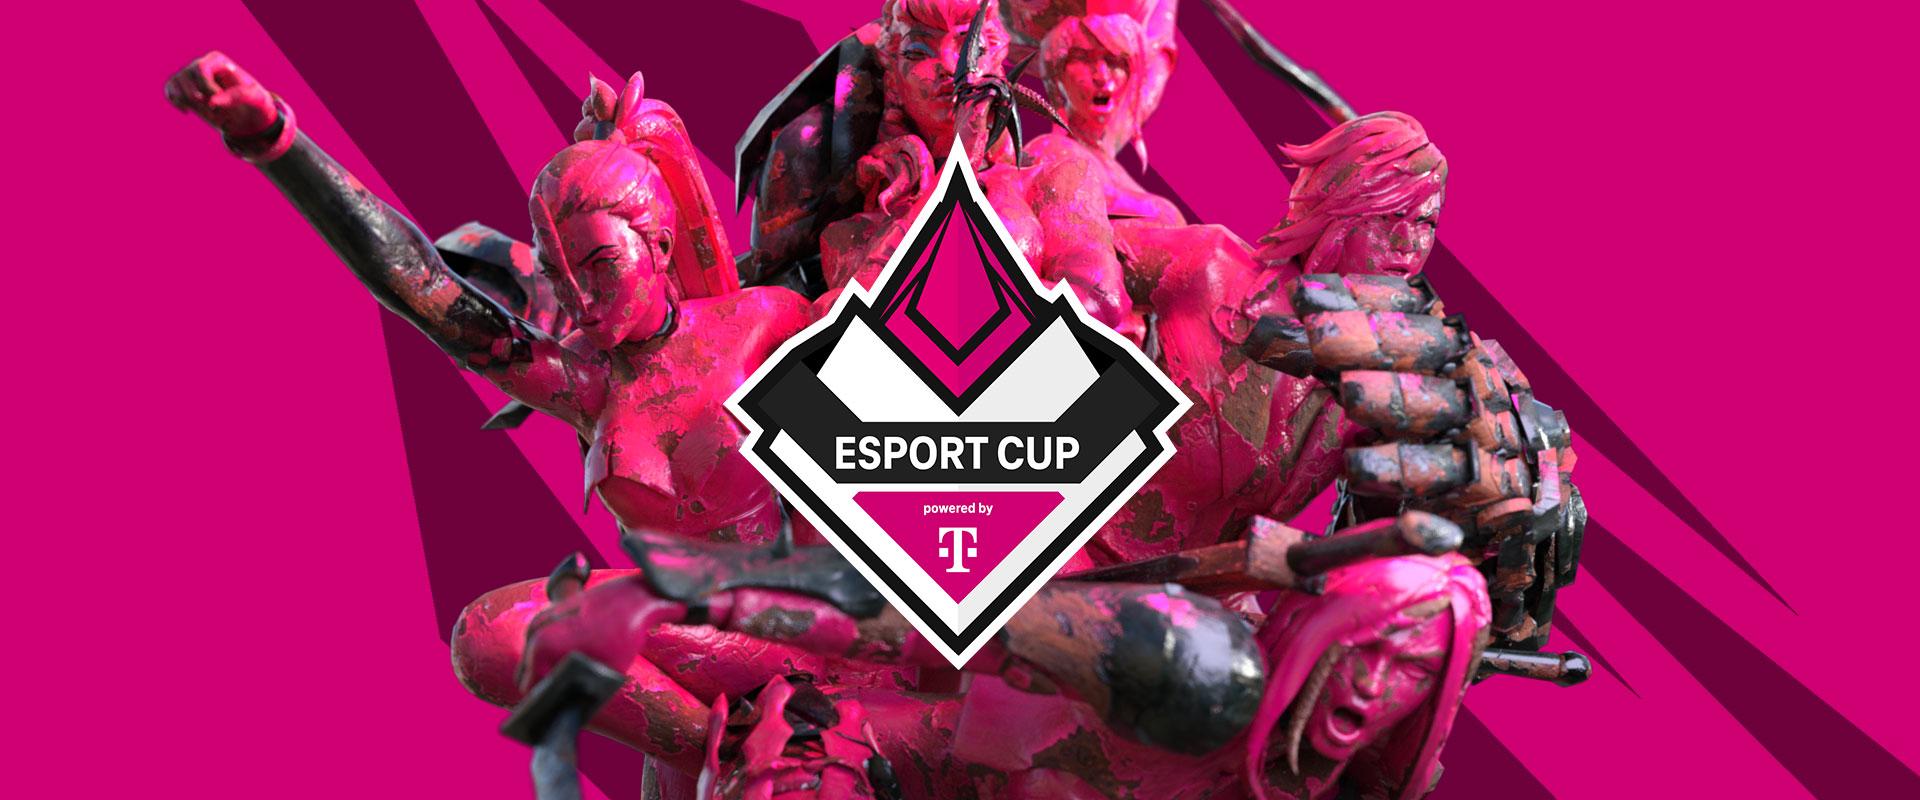 Ez a 11 csapat ott lesz az esport CUP powered by Telekom LAN versenyén!